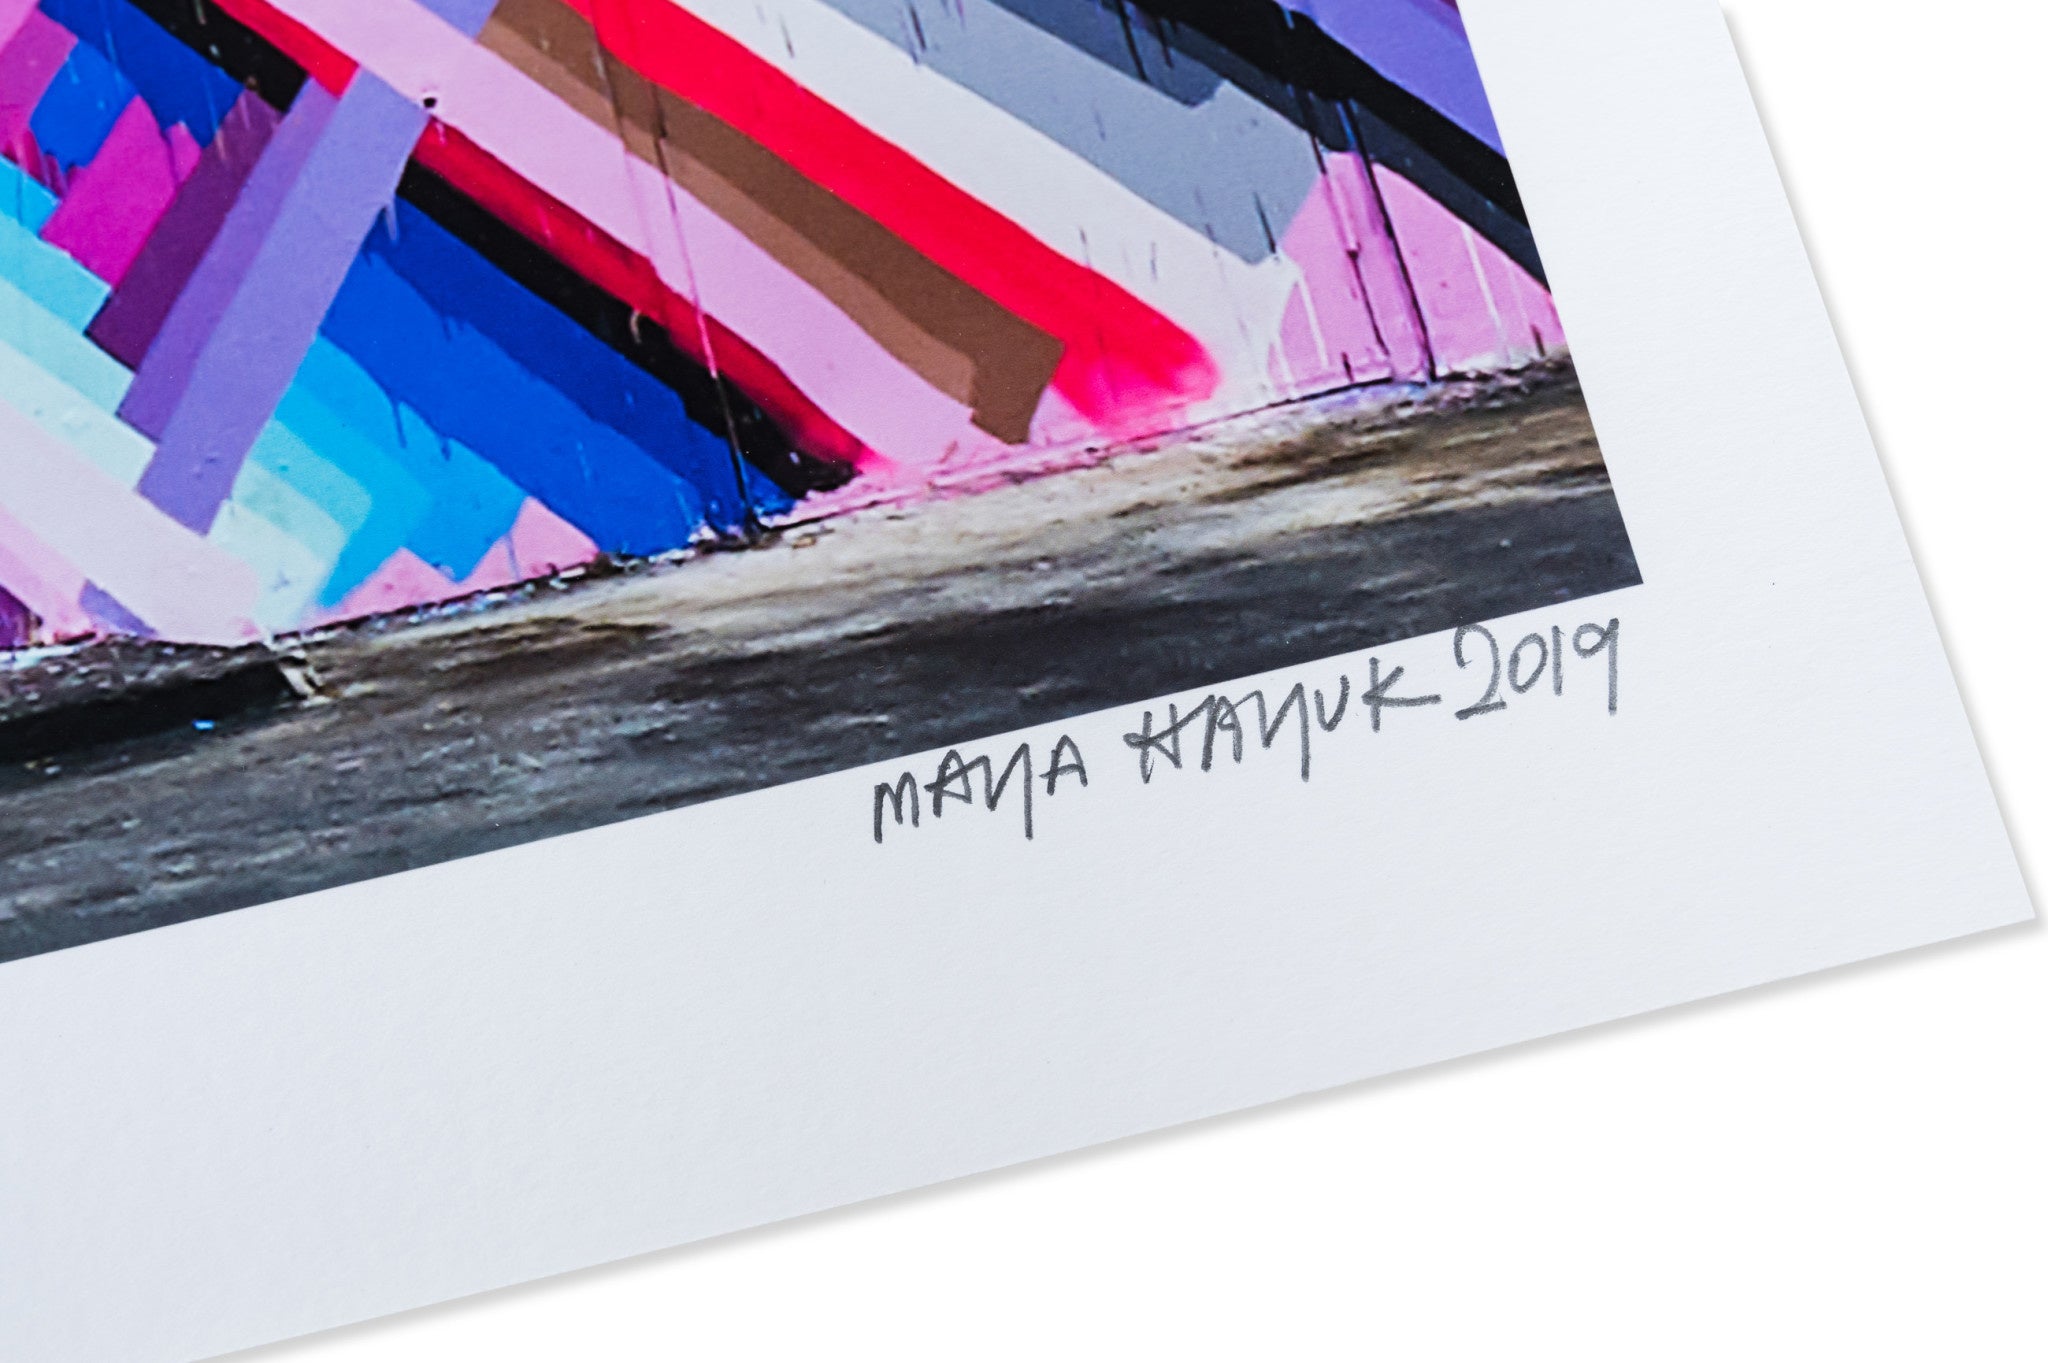 Maya Hayuk x Wynwood Walls 10th Year Commemoration Print - Wynwood Walls Shop